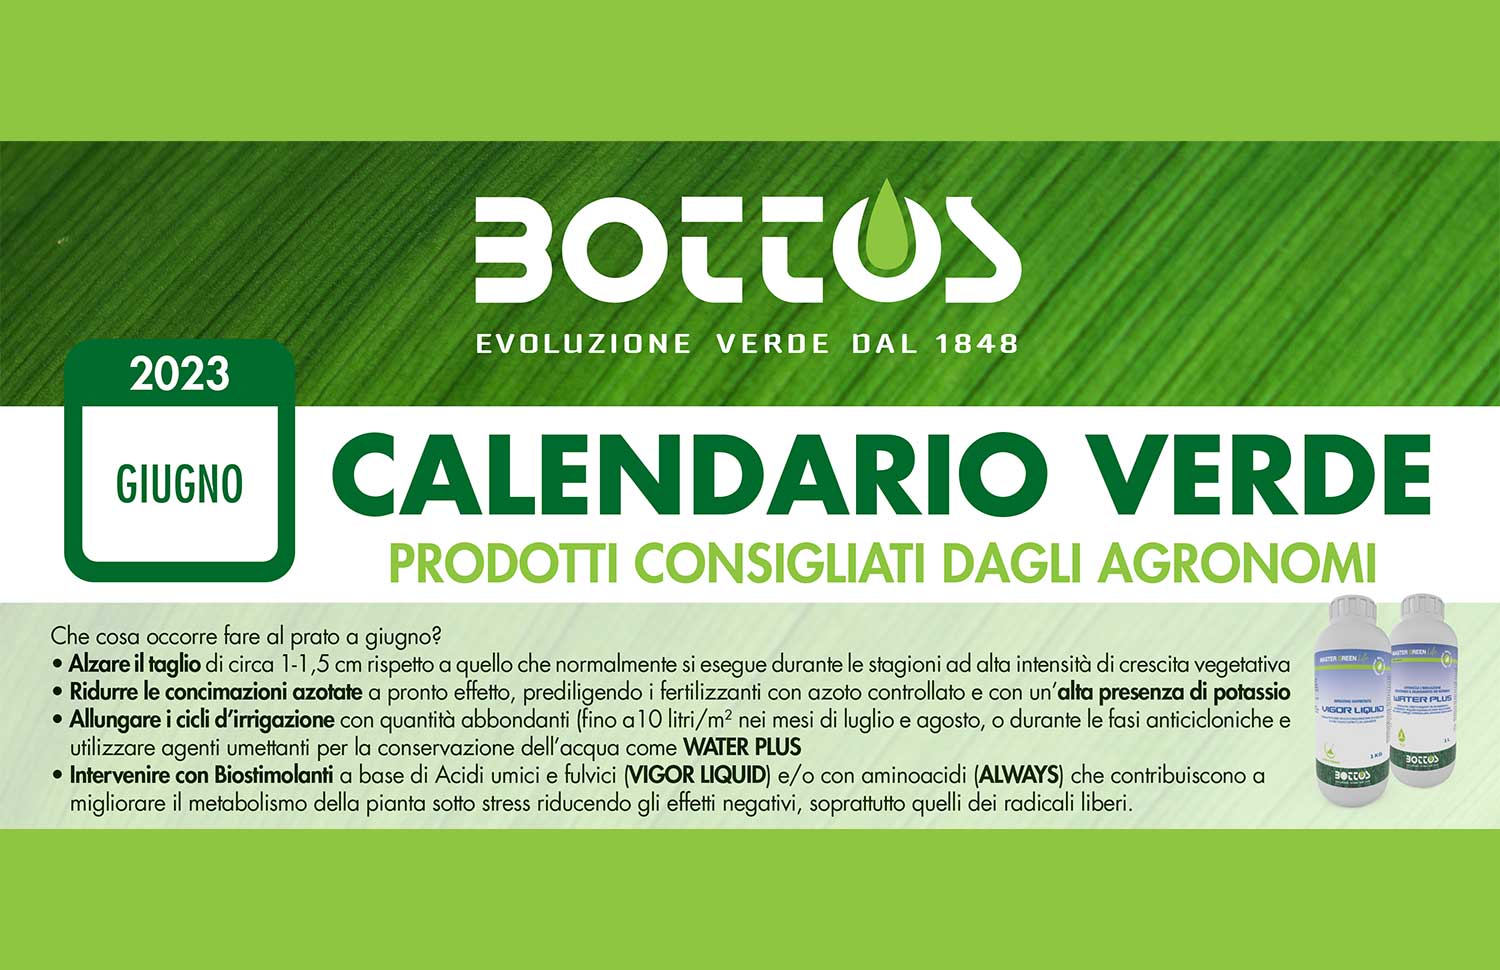 Calendario verde Bottos Giugno 2023